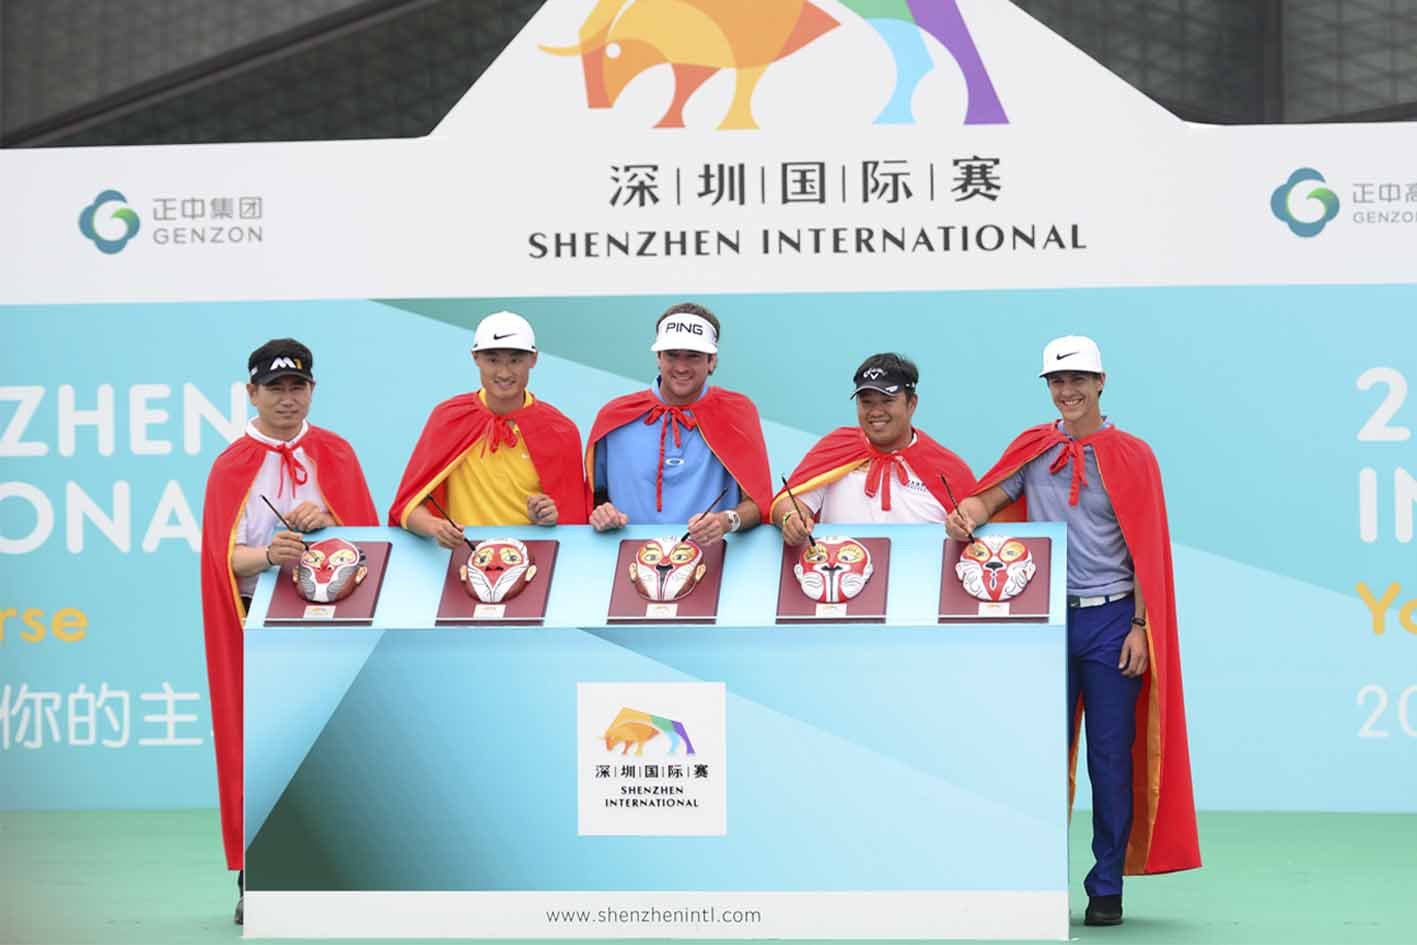 <b>Opening Ceremony of Shenzhen International</b>